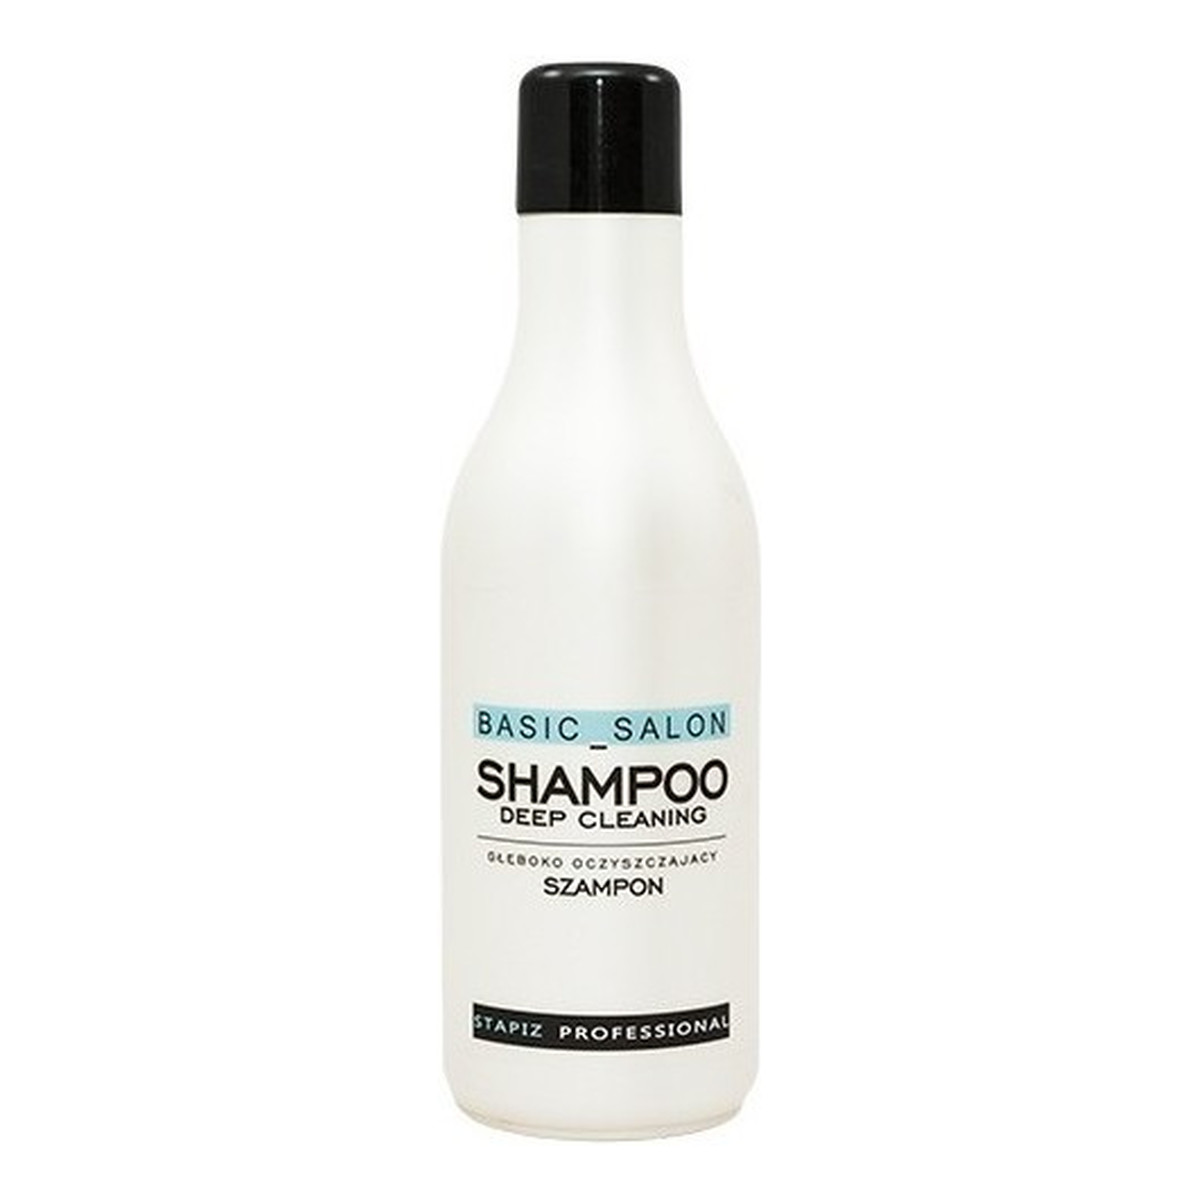 Stapiz Basic Salon Deep Cleaning Shampoo Szampon głęboko oczyszczający 1000ml